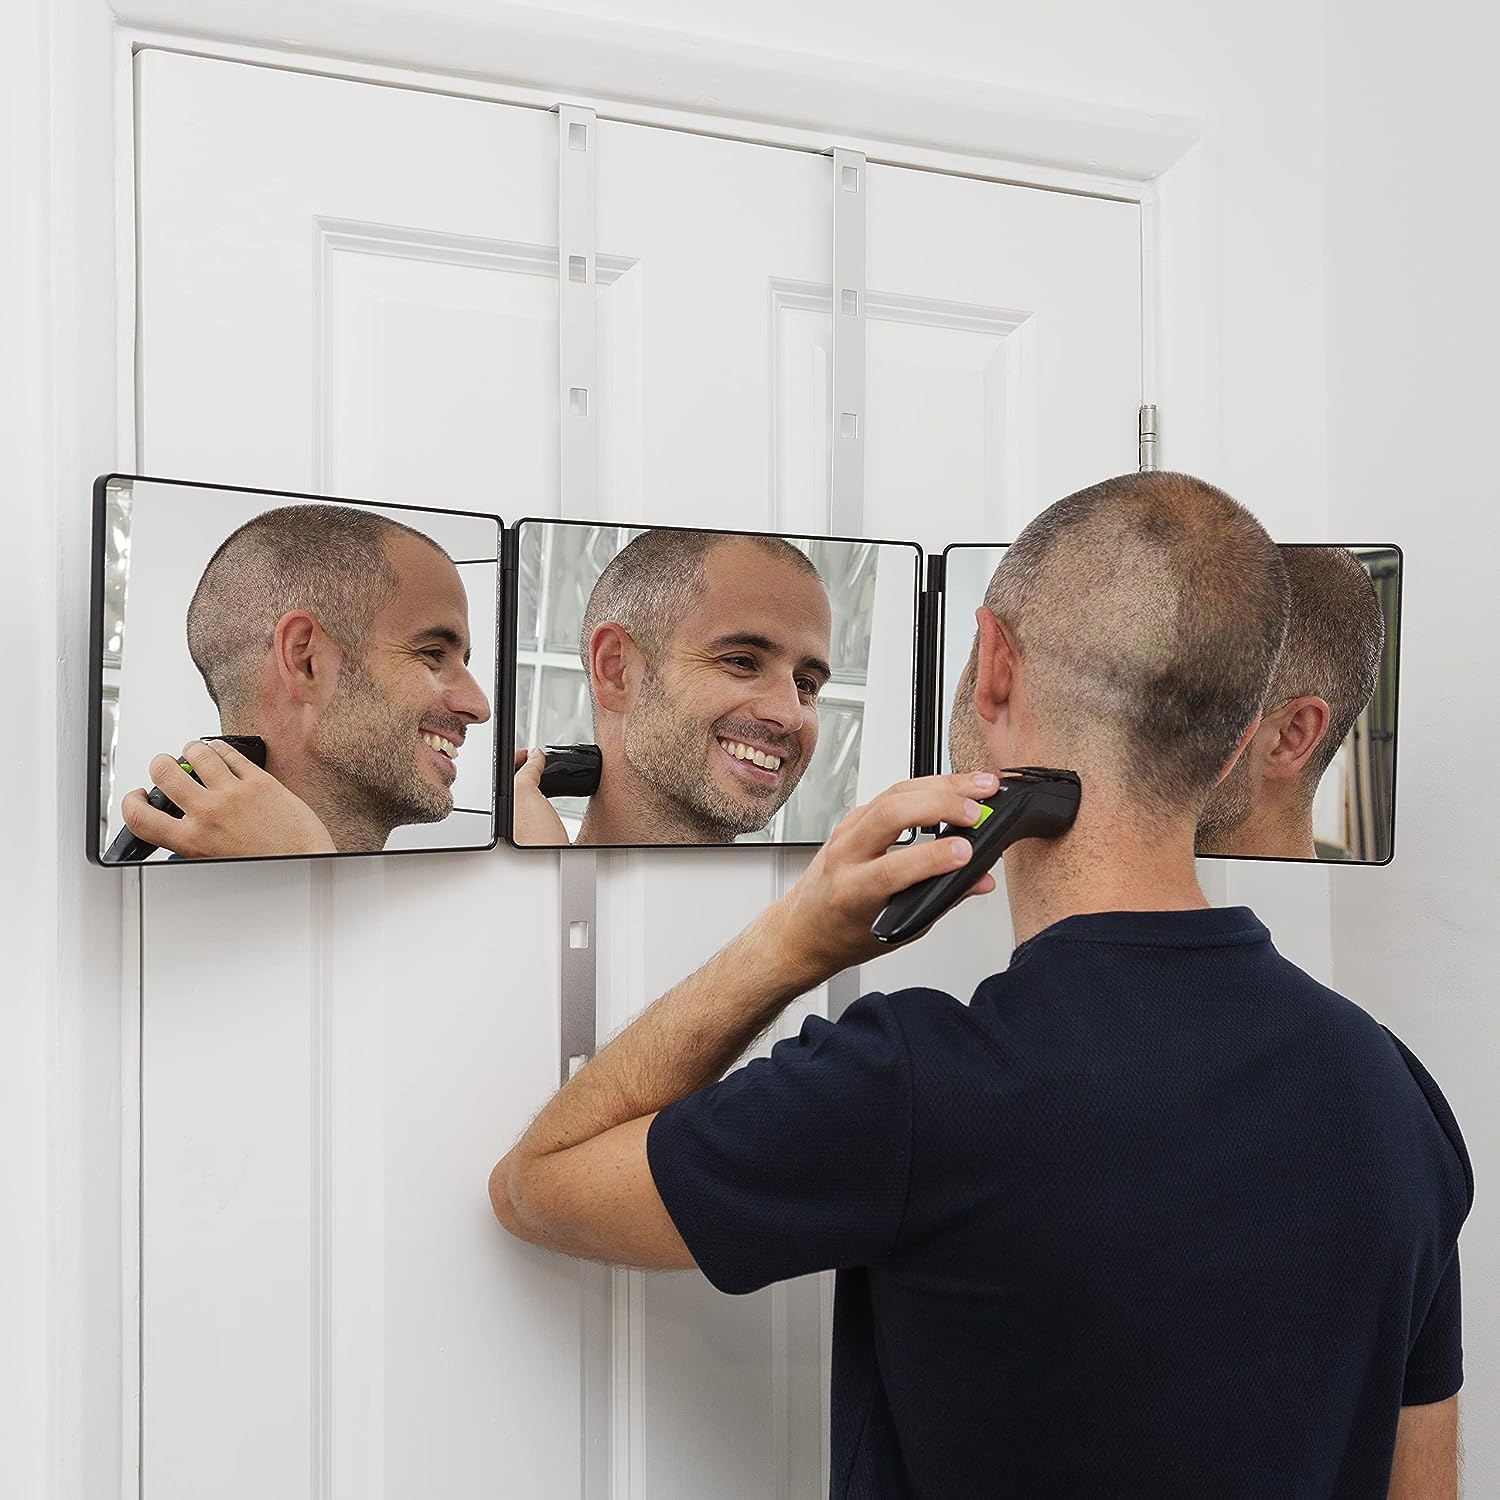 ELLA BELLA 3 Way Mirror for Hair Cutting